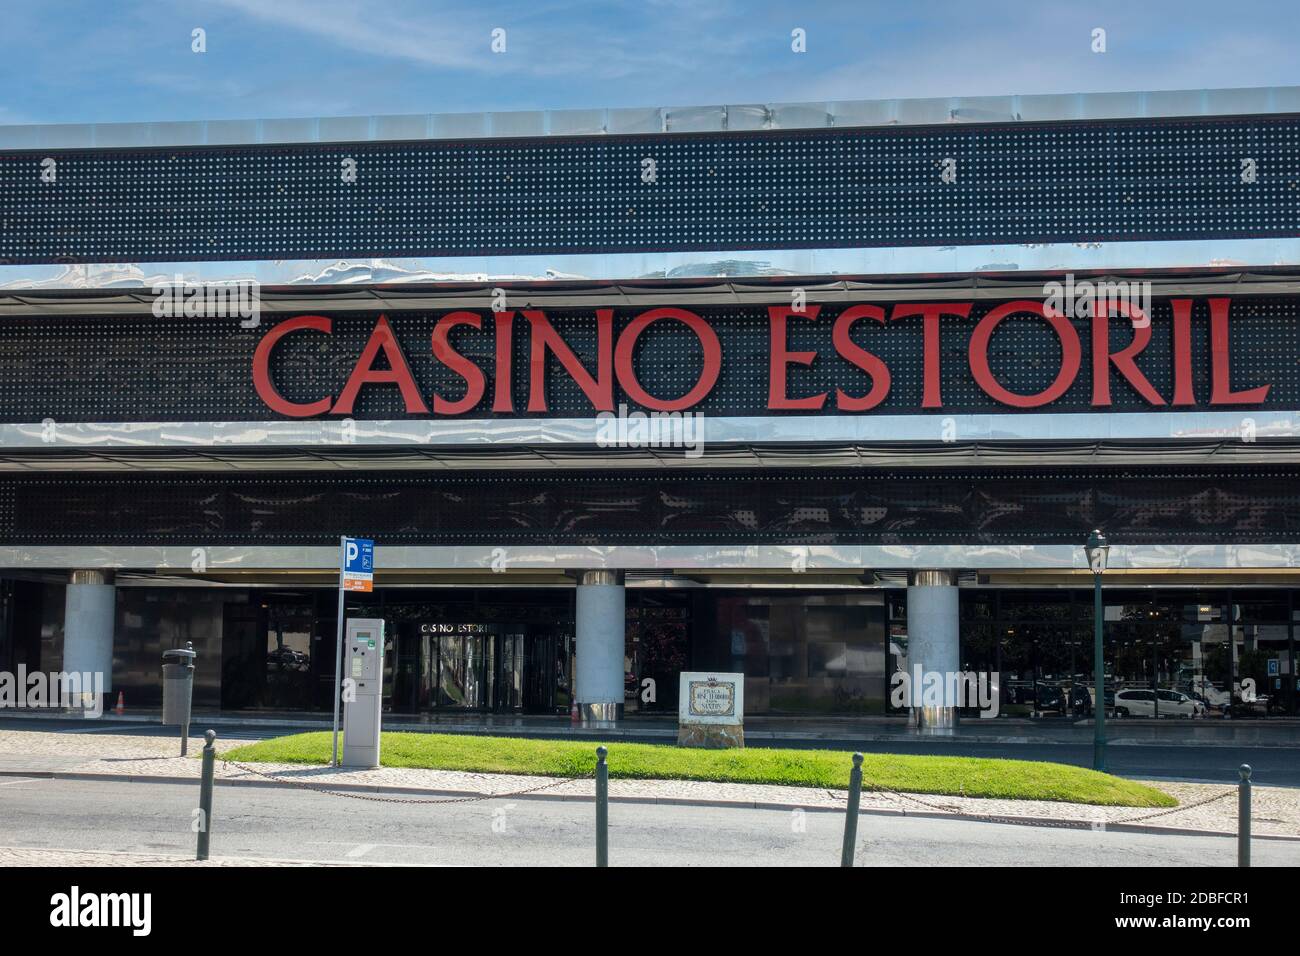 O que você deseja que a casino  se torne?